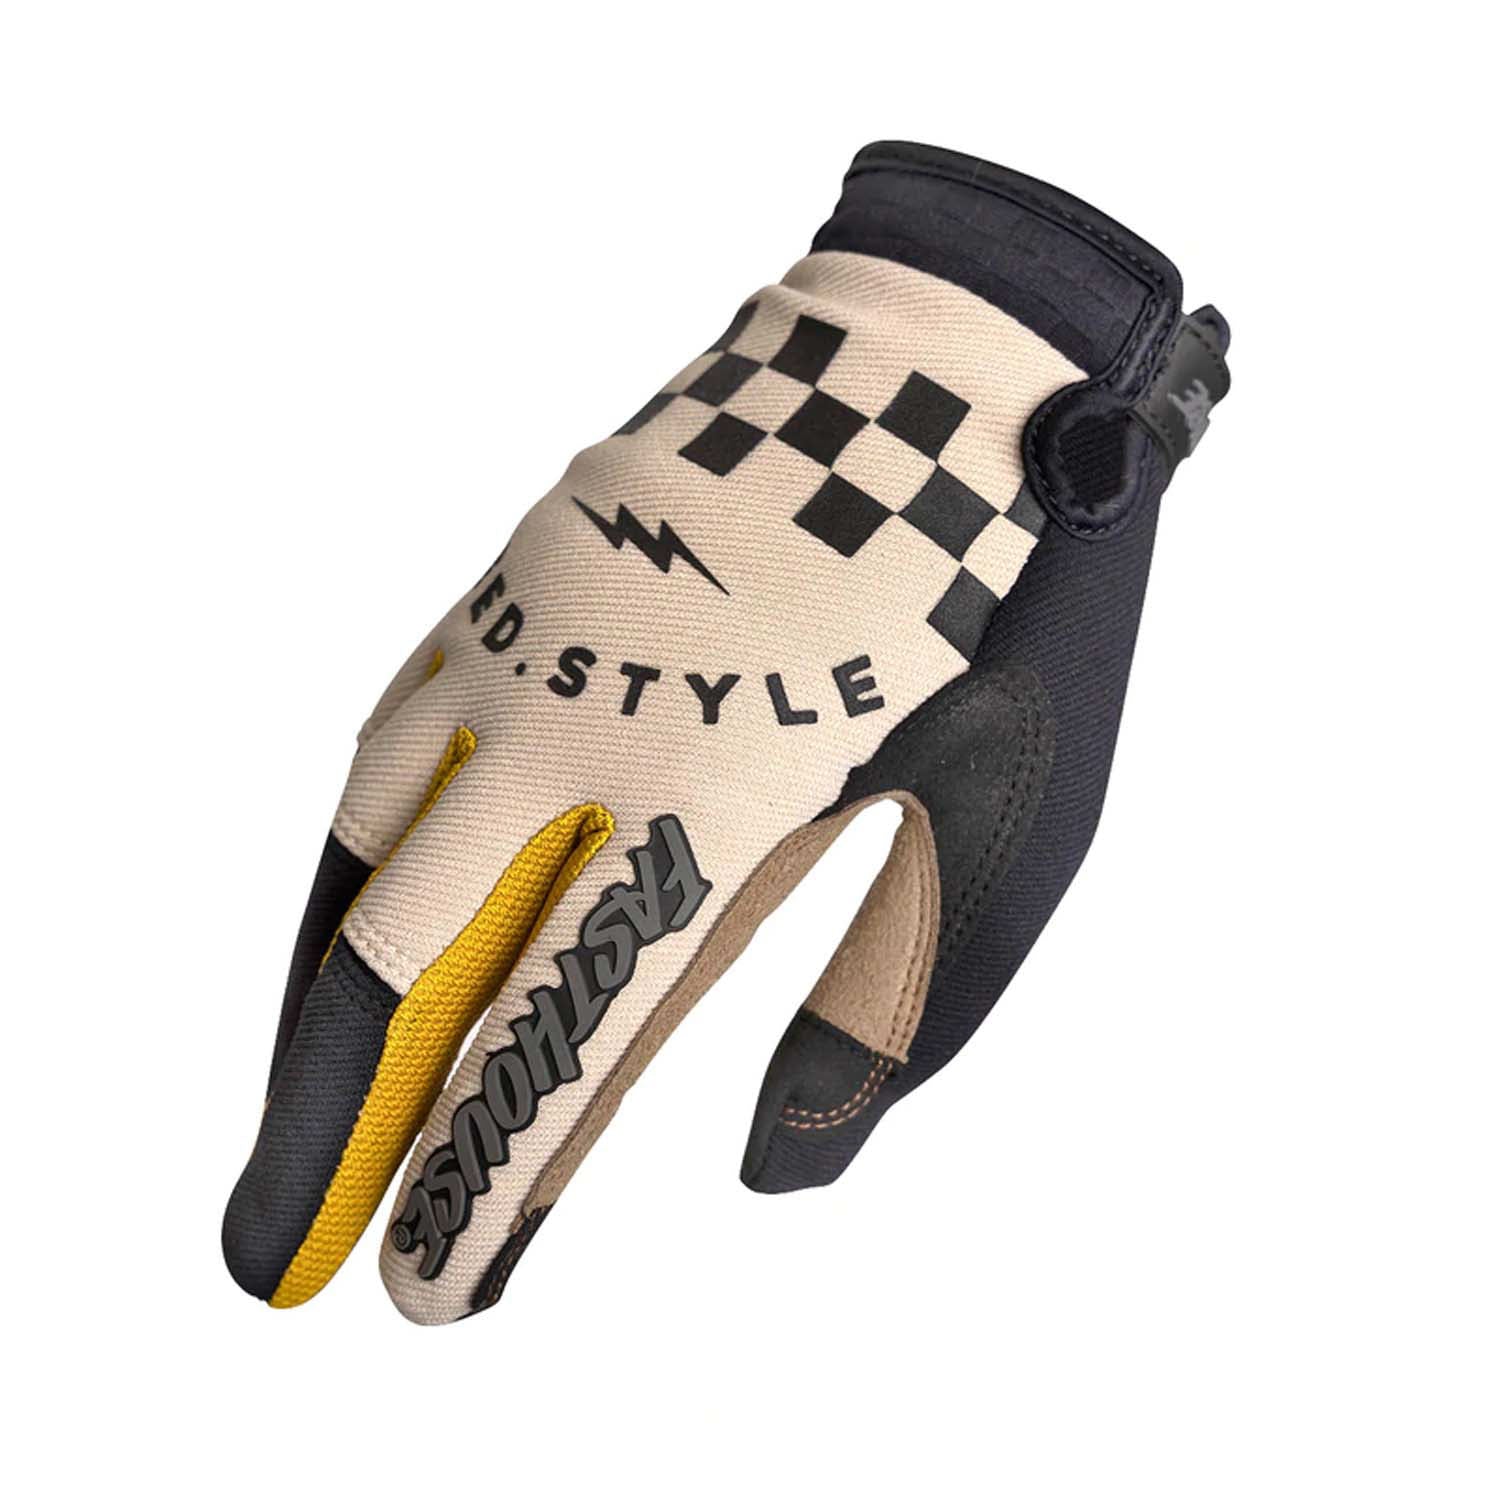 Fasthouse Speed Style Glove - Sale Rowen - Cream Bike Gloves